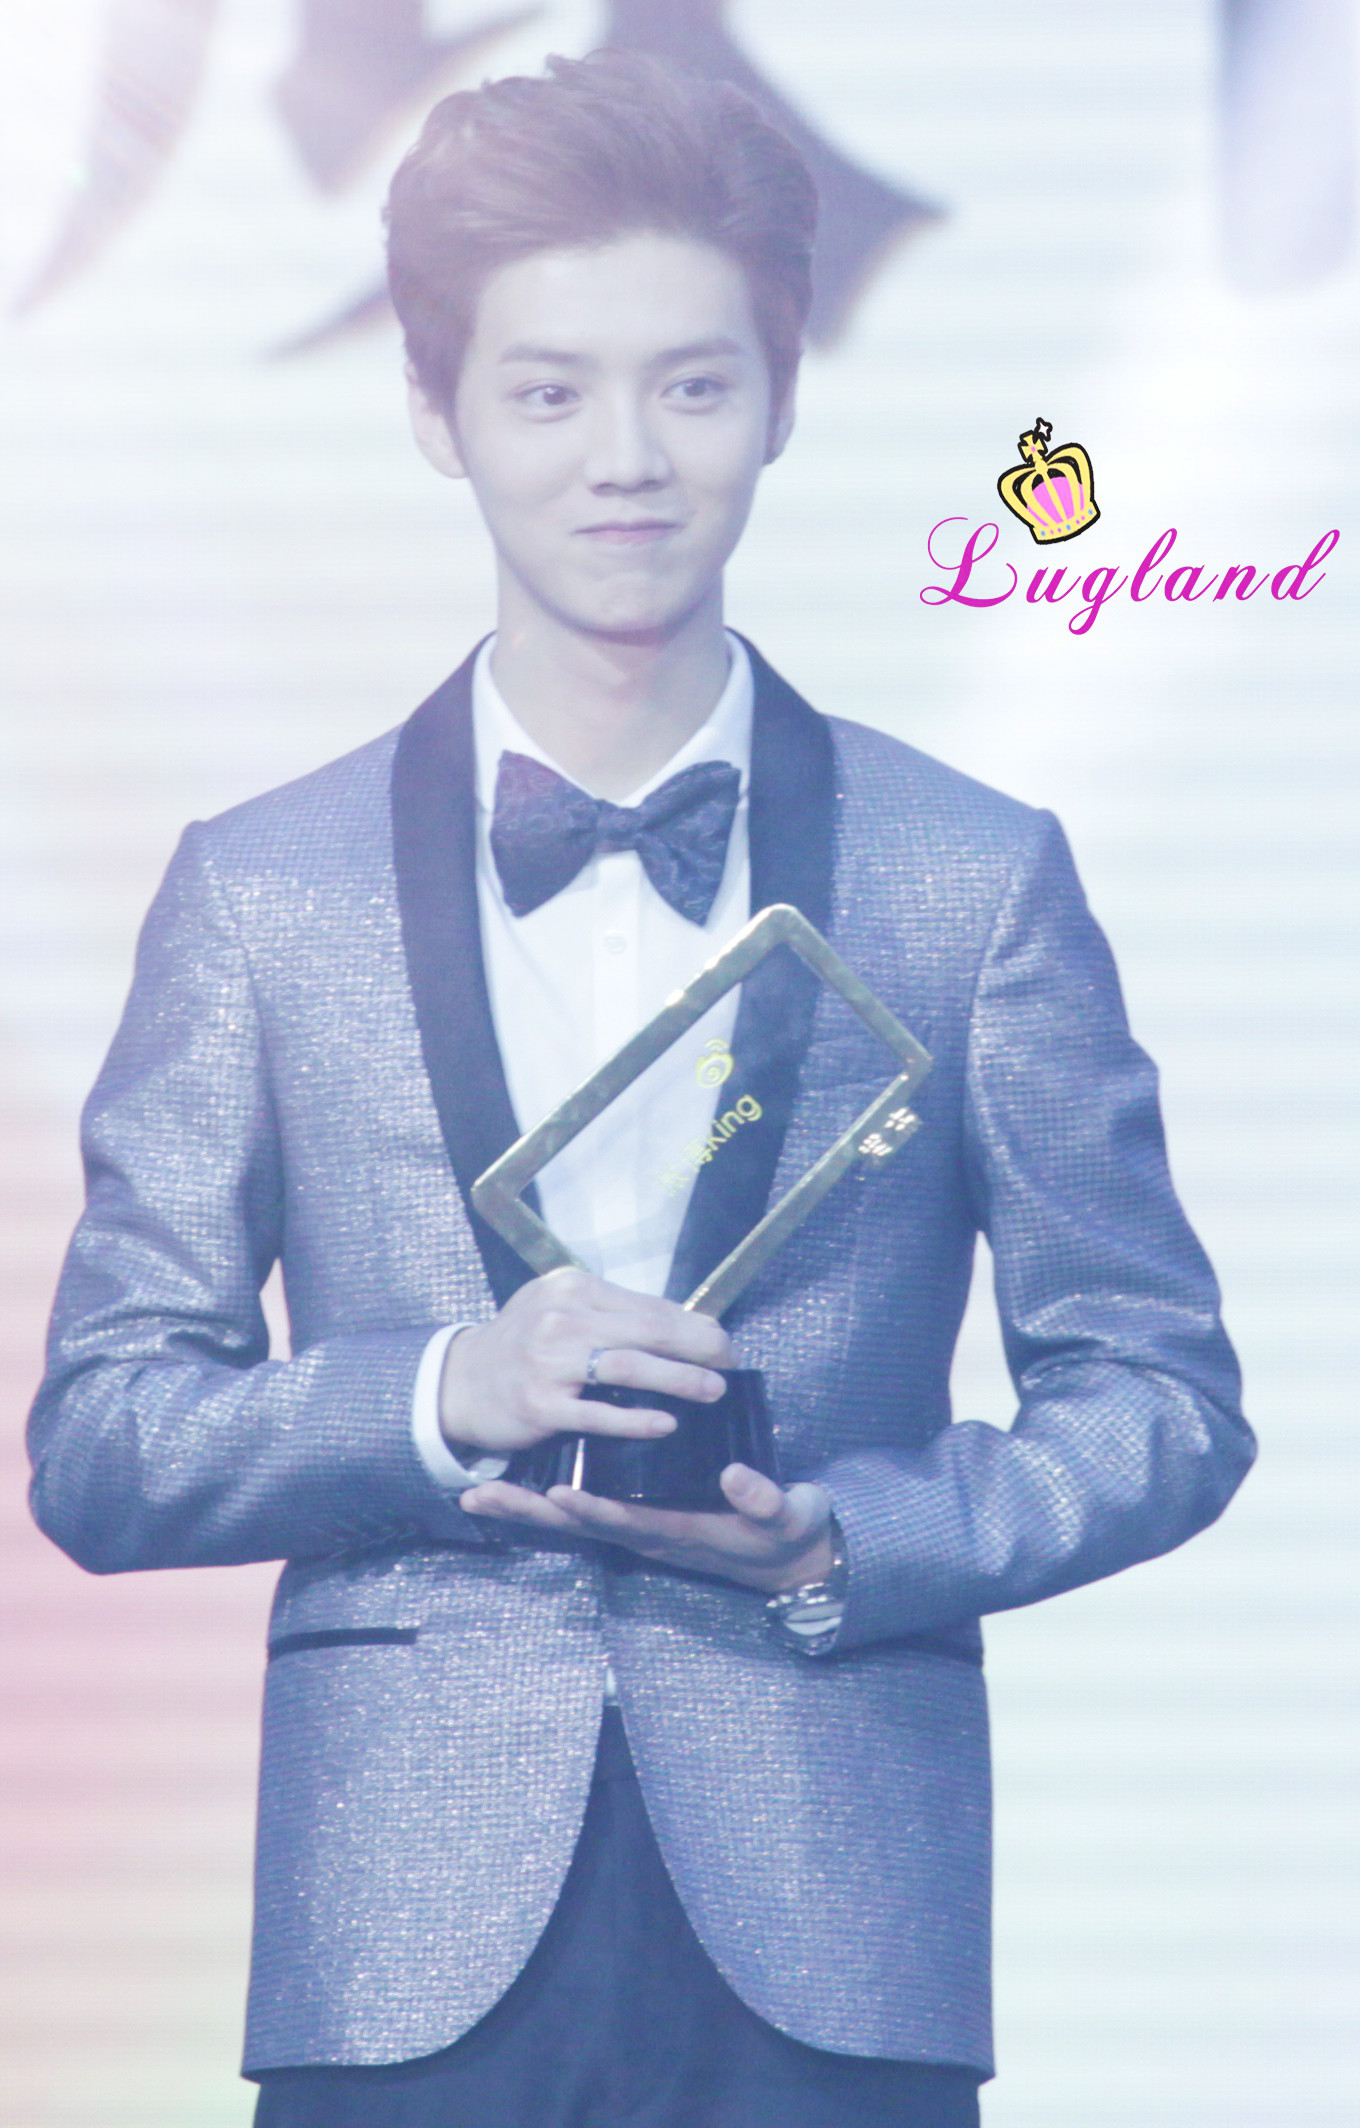 [FANTAKEN] 150115 2014 Weibo Awards Night [100P] 005KJncKjw1eocsbz4s3uj311s1n4k4v